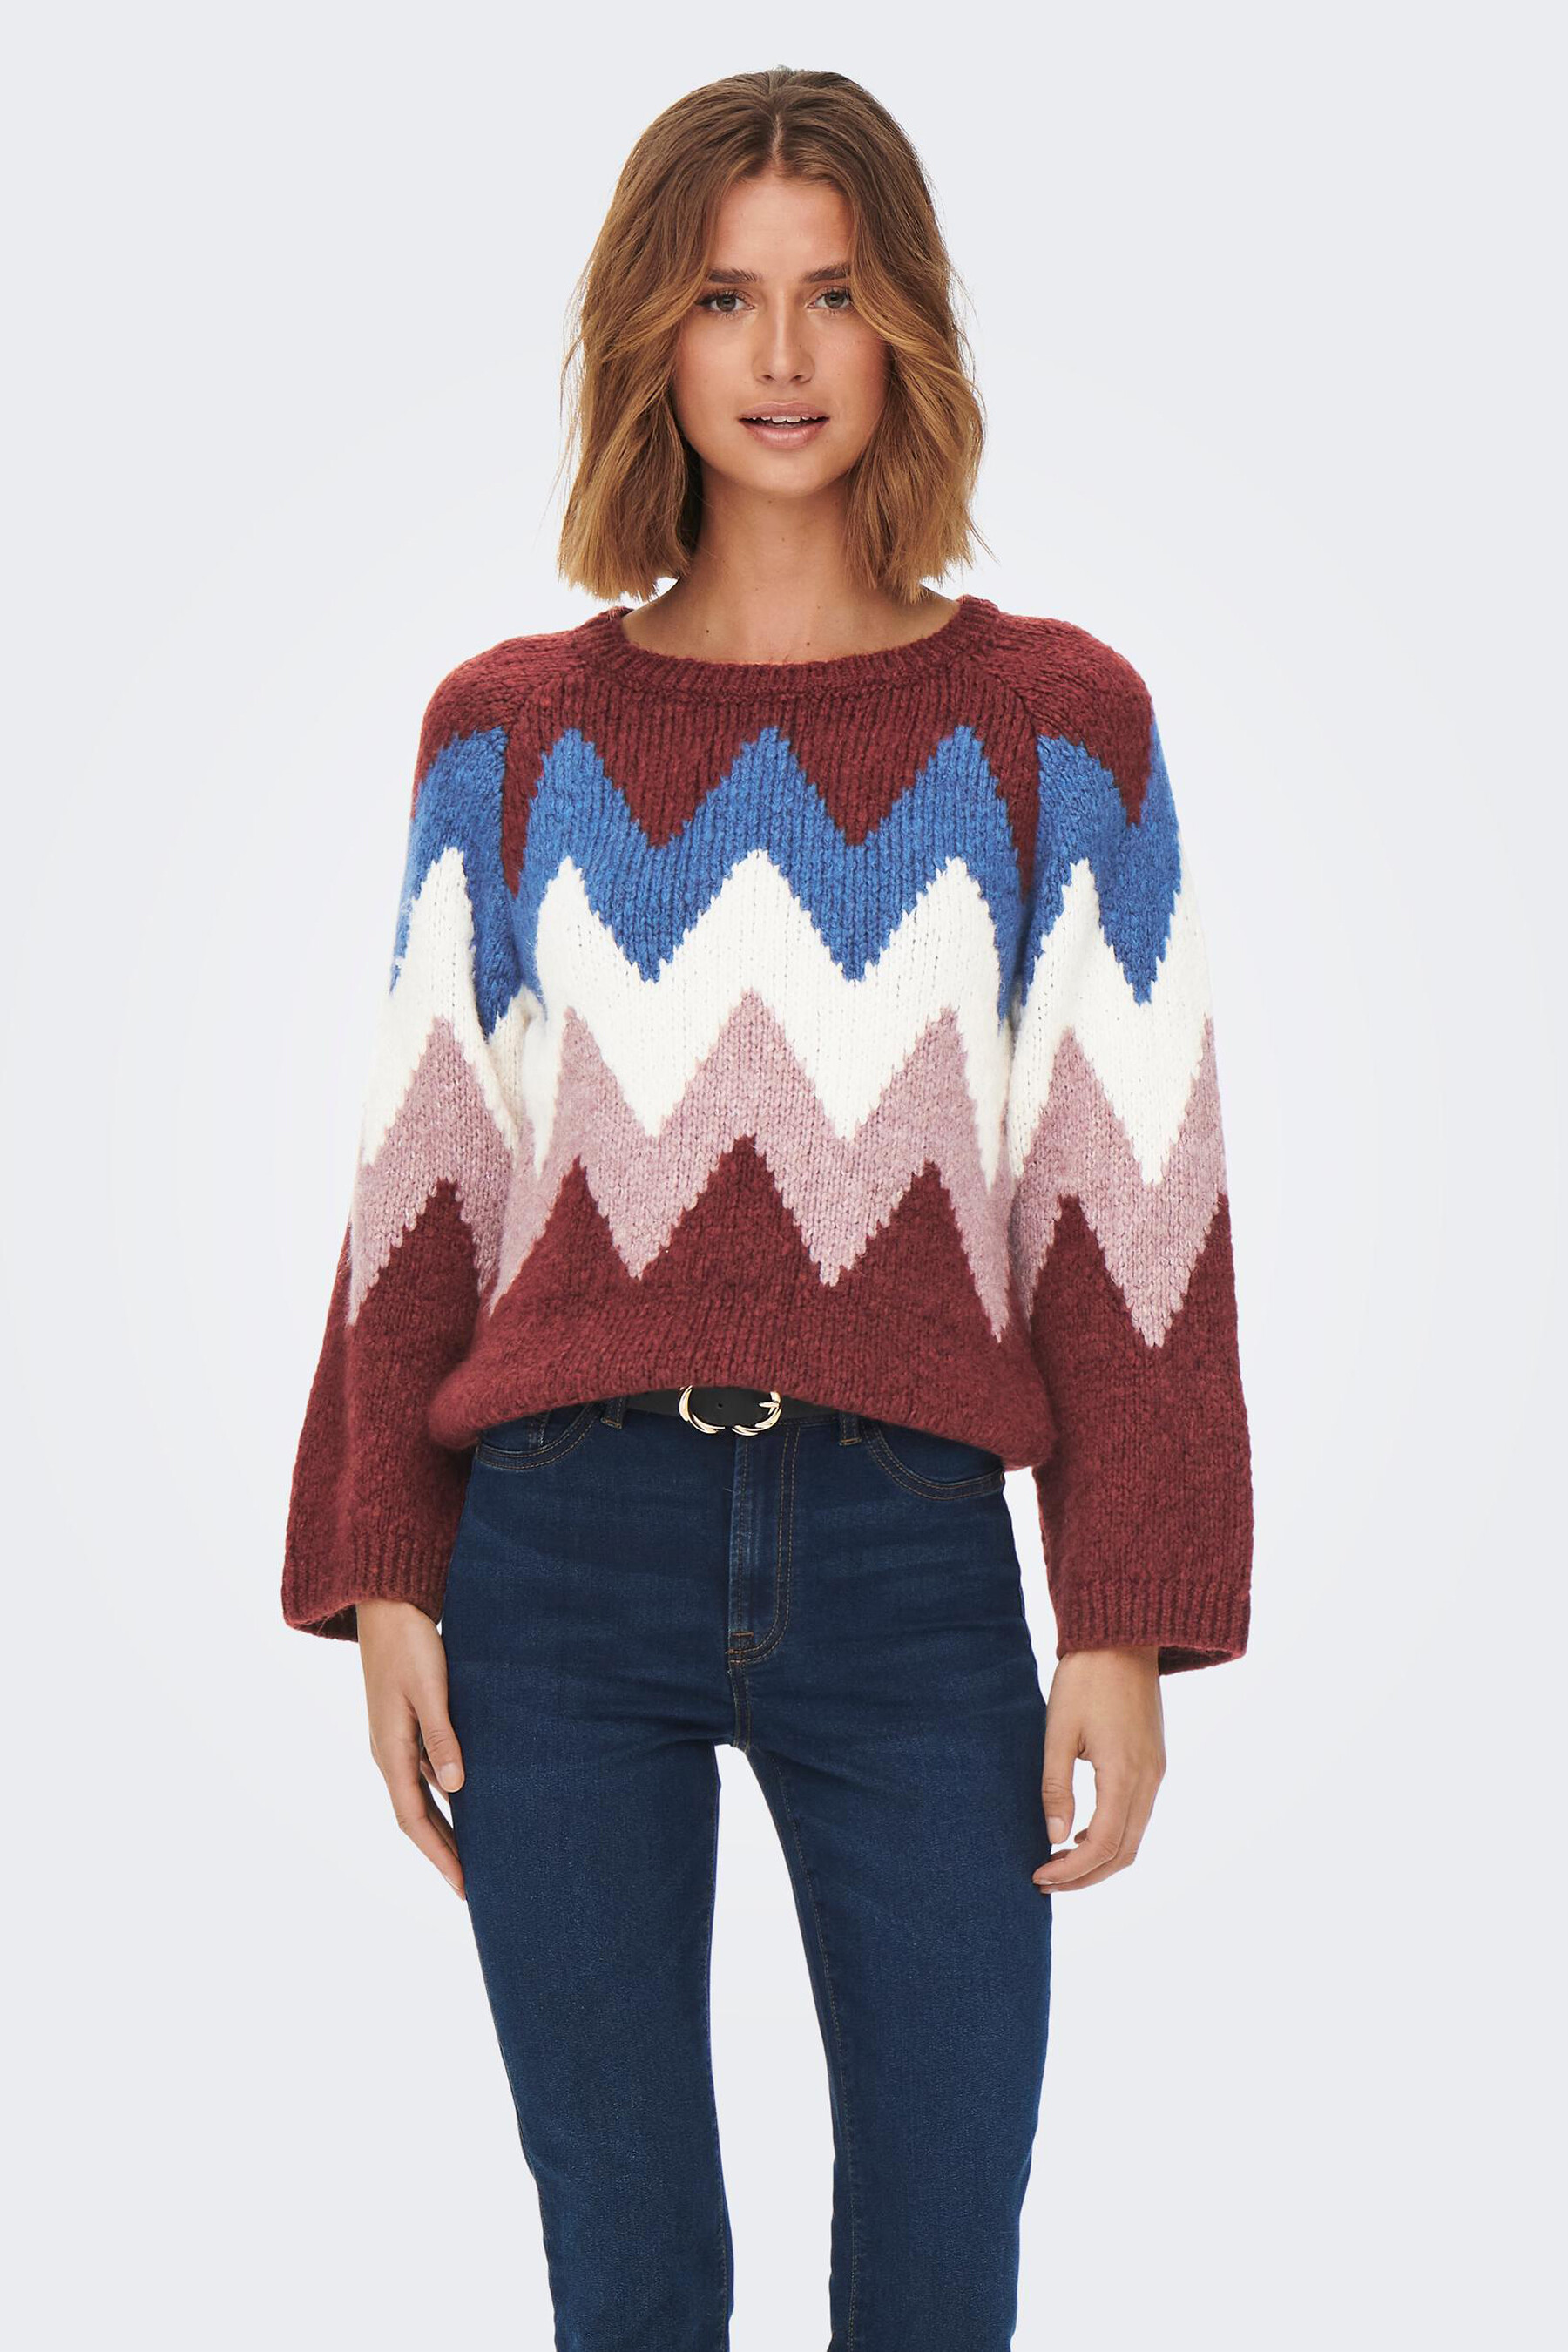 Kleding Dameskleding Sweaters Pullovers Wollen trui voor dames 